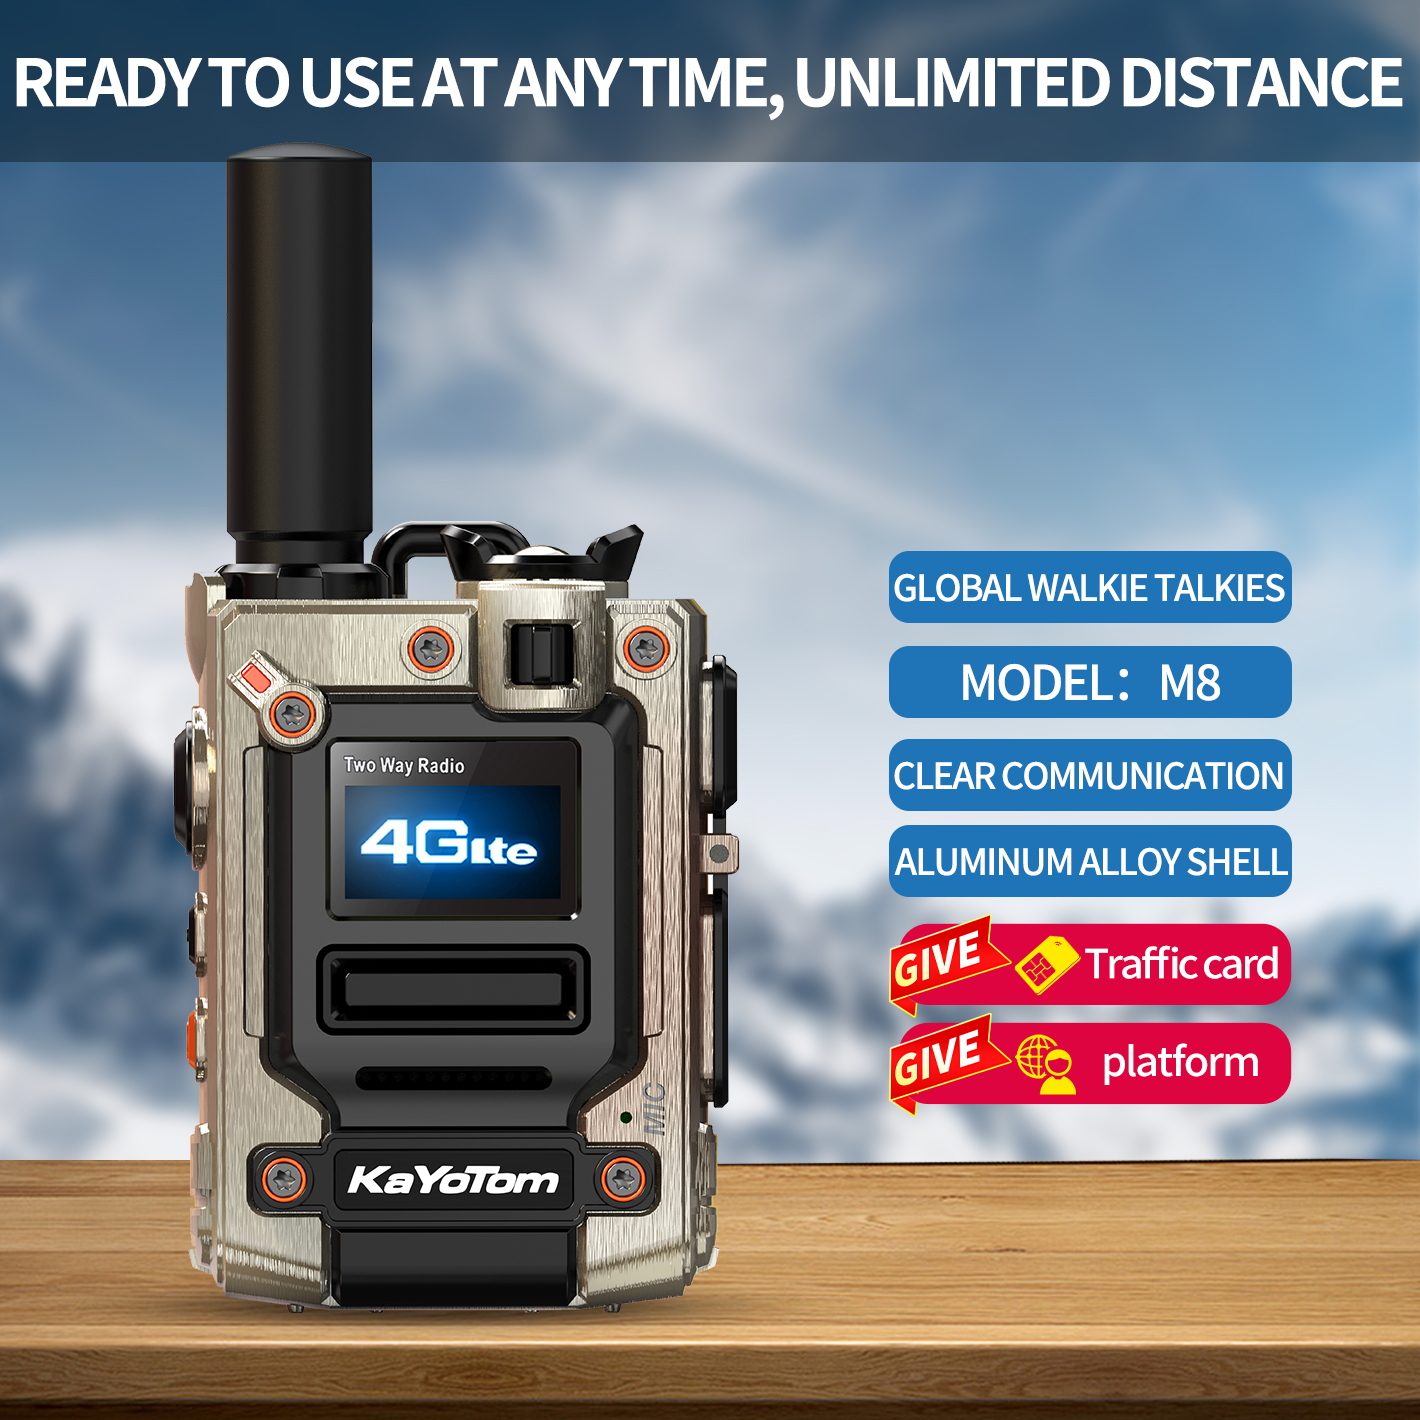 Global walkie Talkie,Kayotom Global walkie talkies Unlimited Range,Two Way Radio,Global walkie-talkies 5000 Mile Range,Walkie Talkies for Family Contact,Hiking Camping (with  SIM Card)